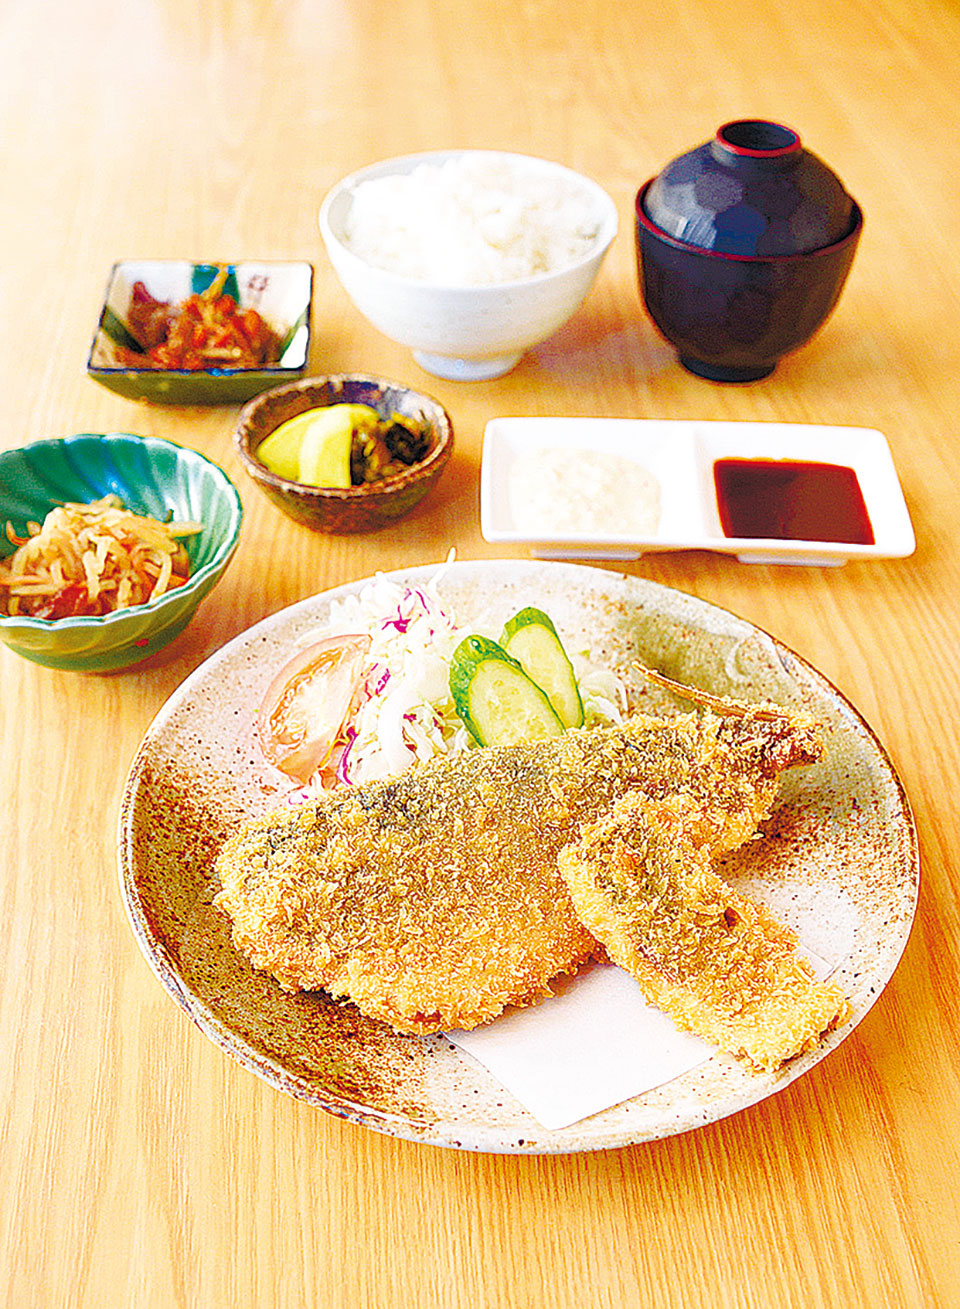 しみず 一番人気は、田崎市場の鮮魚を使った あじフライ定食 写真・700円